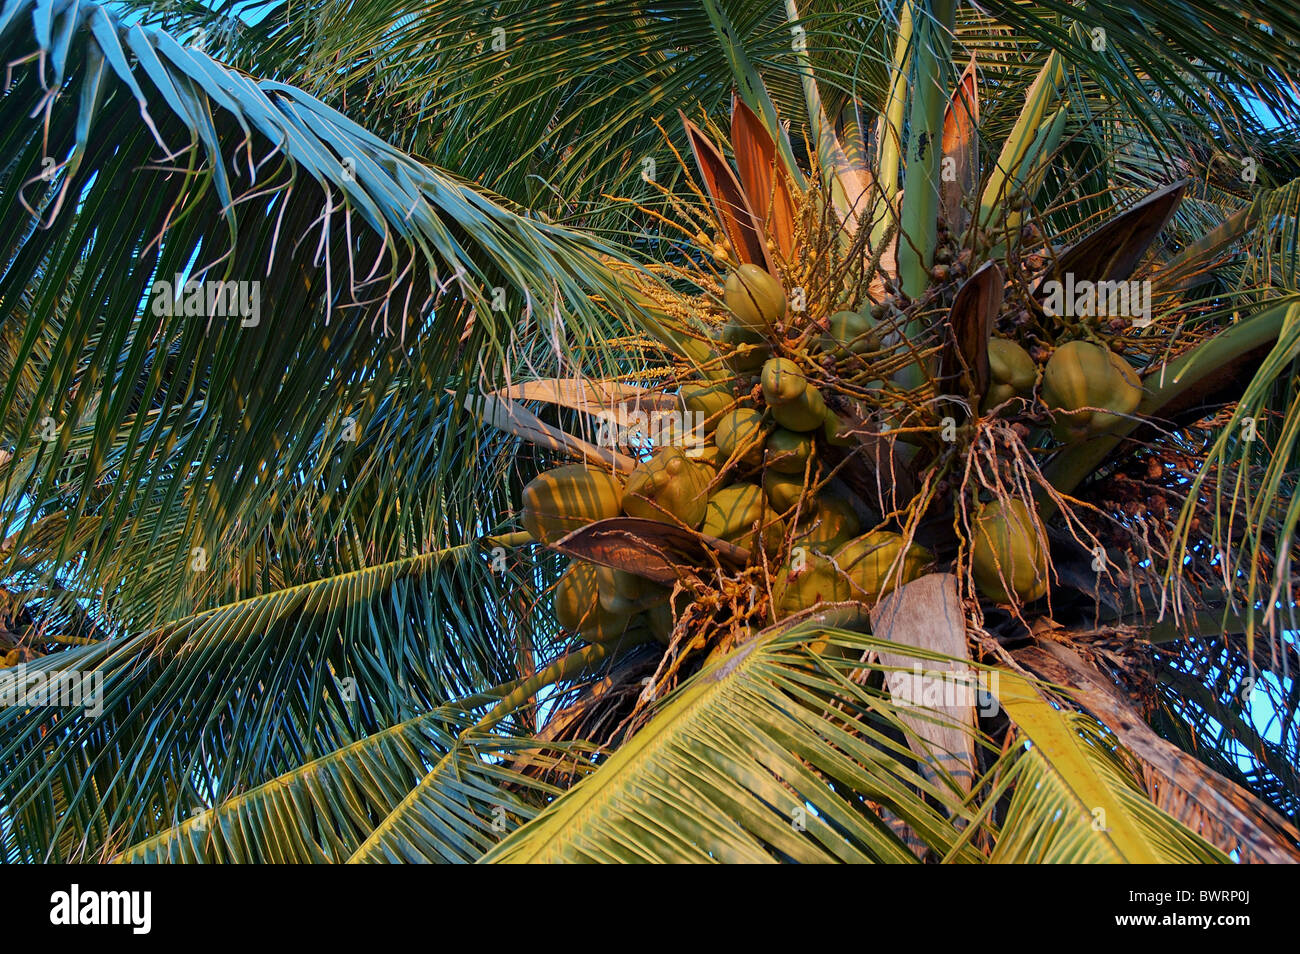 Noci di cocco che cresce su un albero di palma, Maldive. Foto Stock